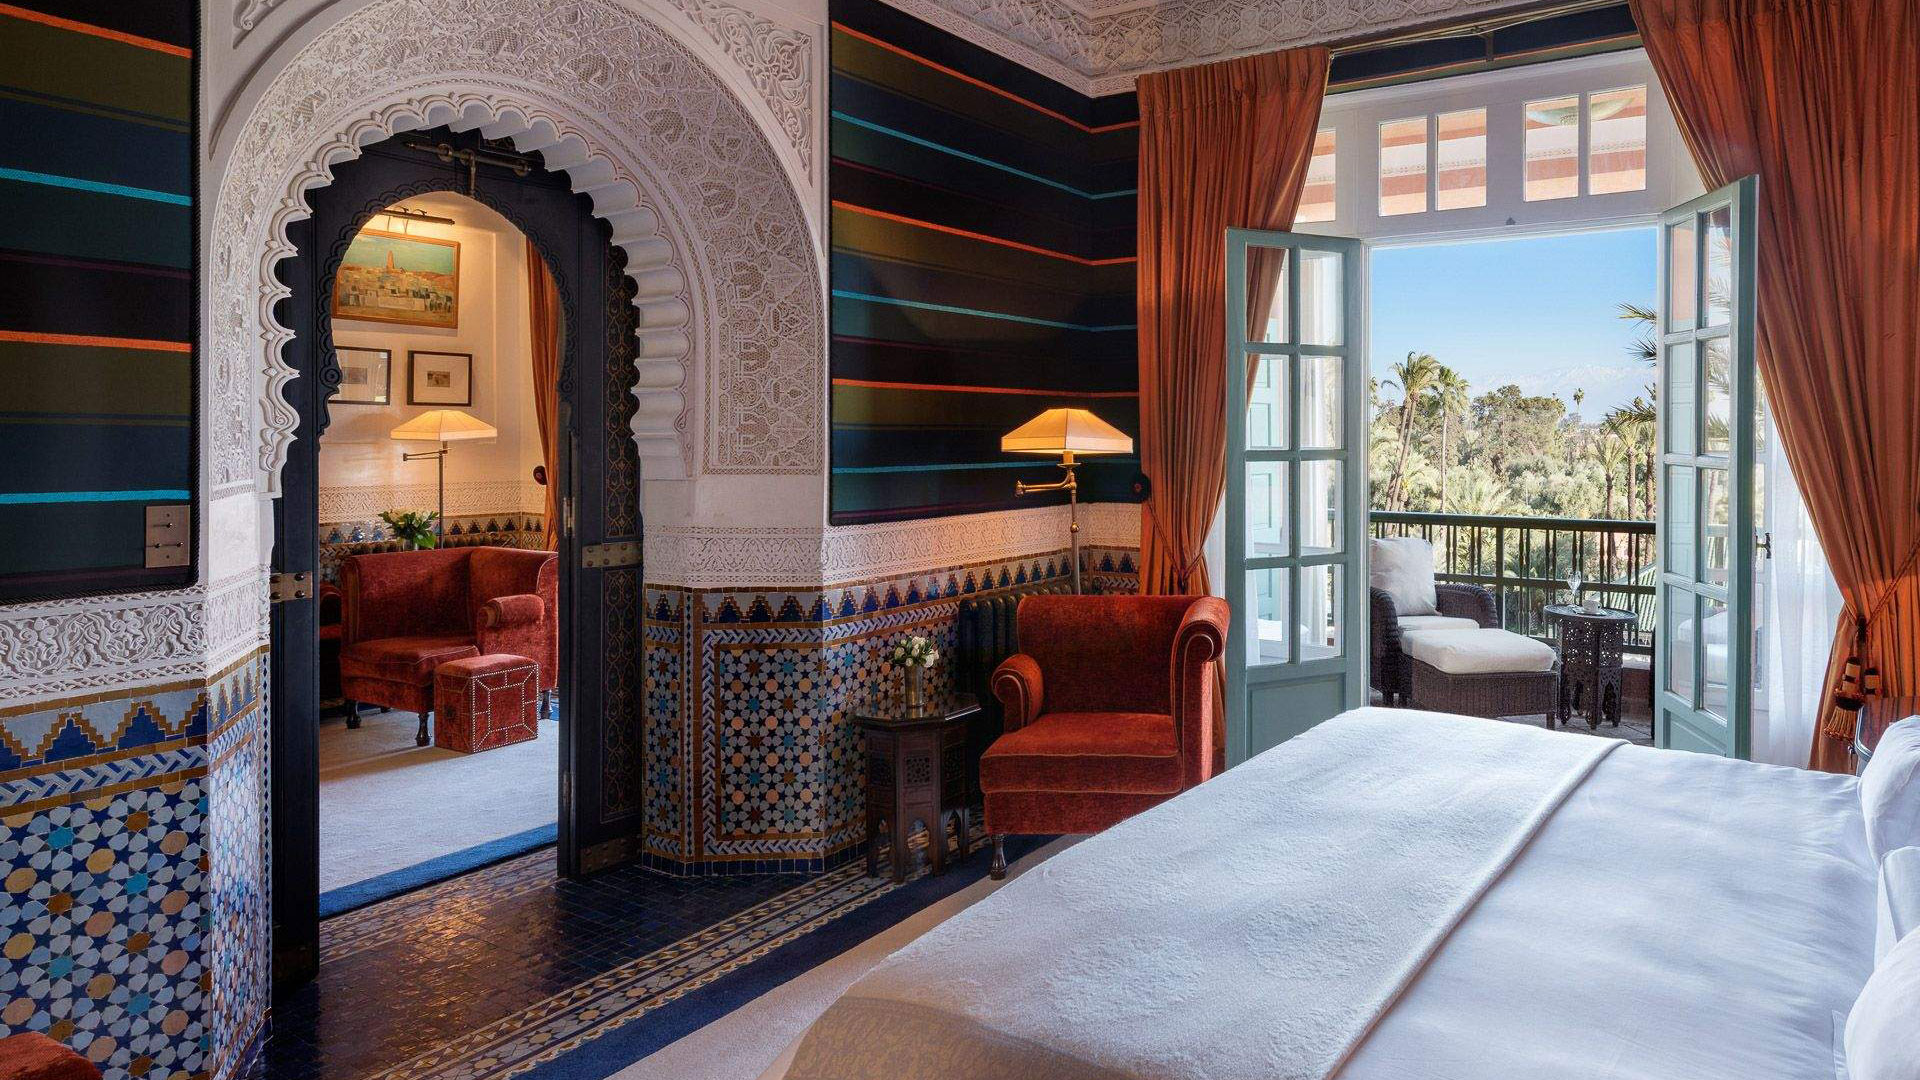 Hotels of the world: La Mamounia, Morocco